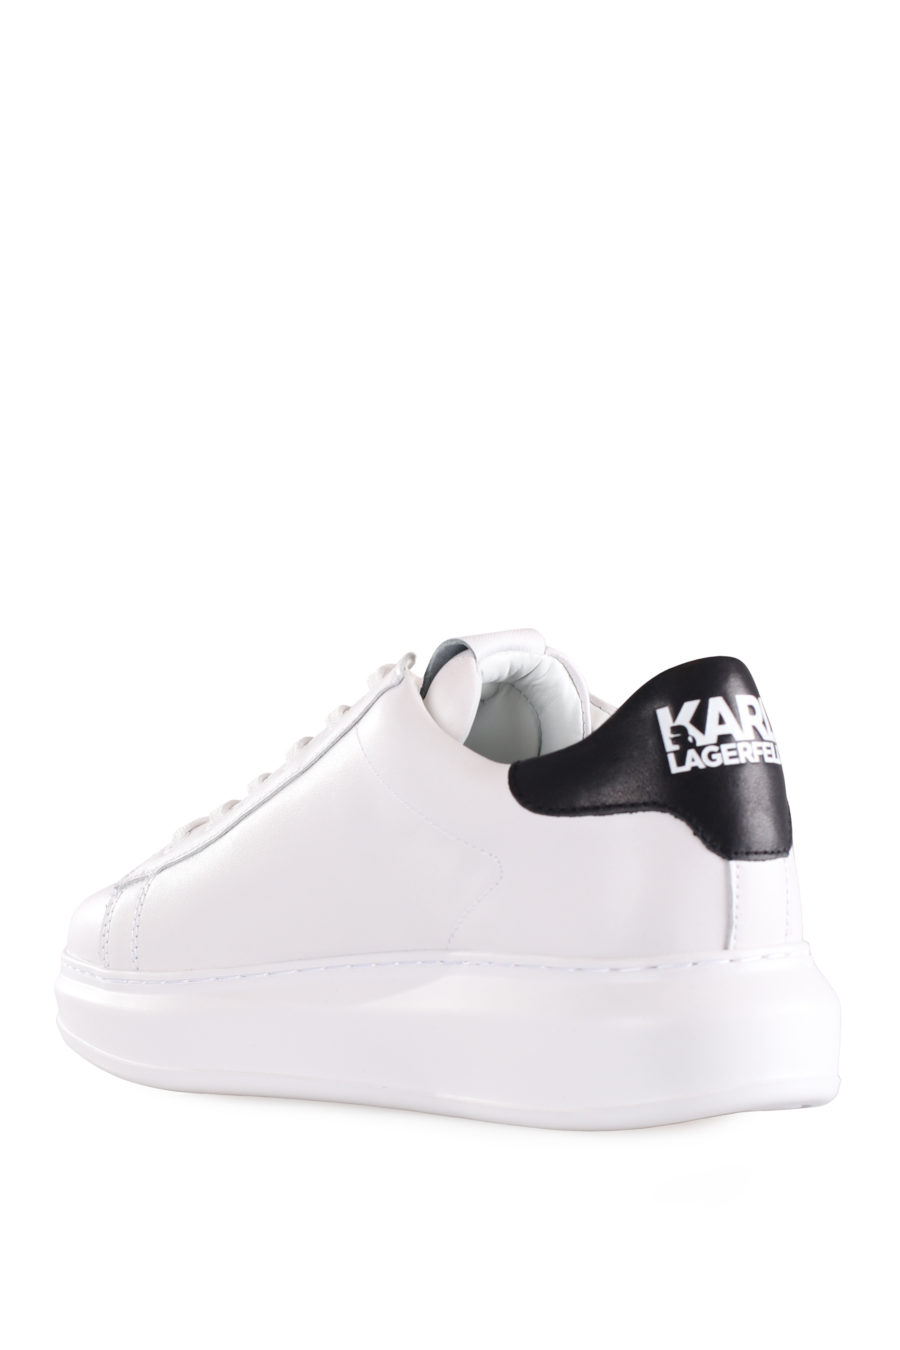 Zapatillas blancas con logo "Karl" en goma - IMG 9583